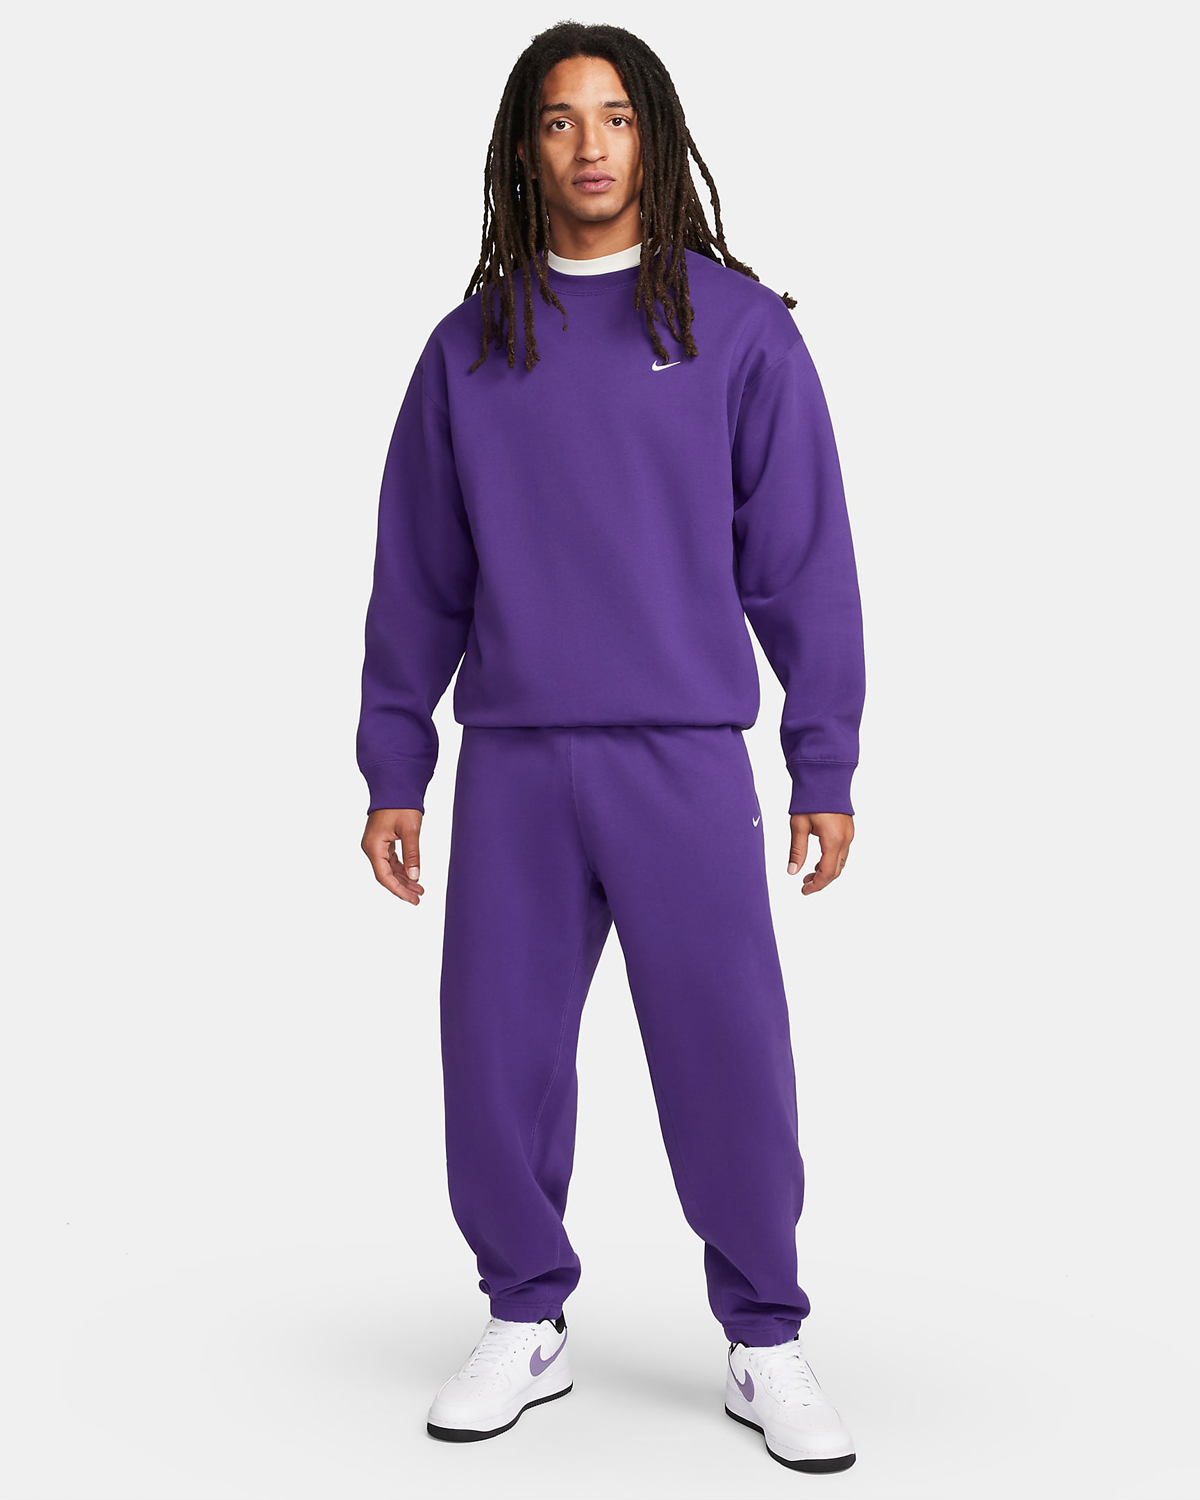 Nike-Solo-Swoosh-Fleece-Crew-Sweatshirt-Field-Purple-Outfit